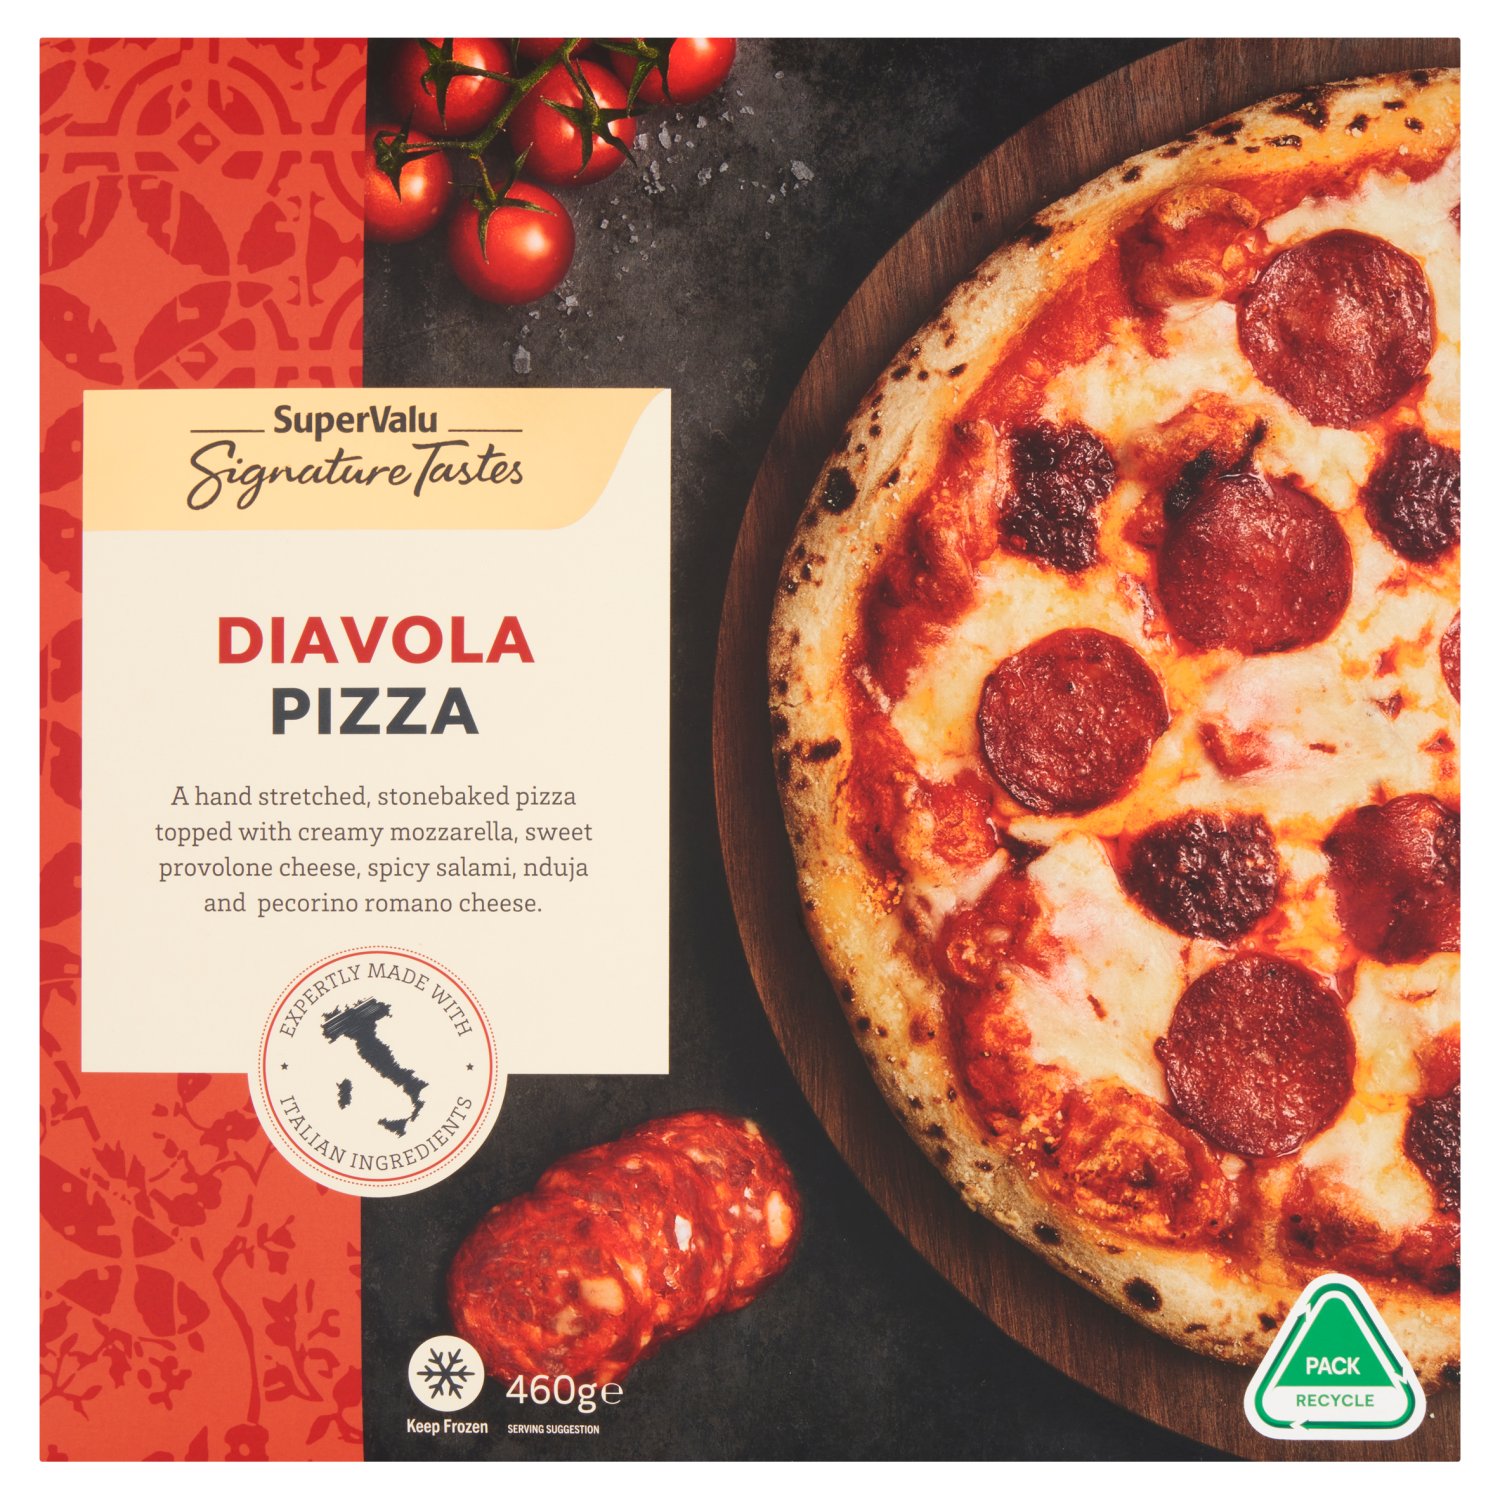 Signature Tastes Diavola Pizza (460 g)